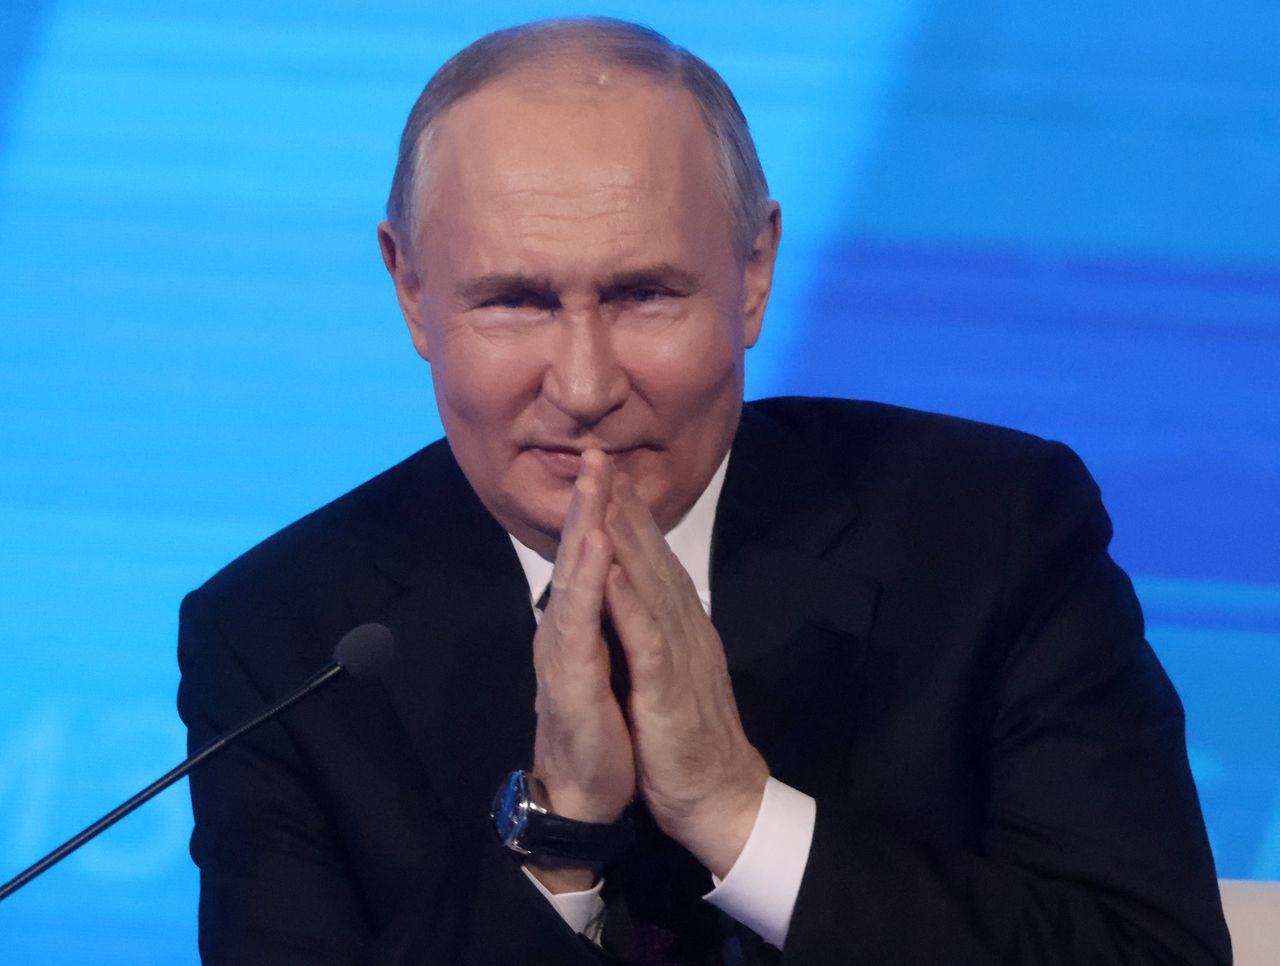 Rosja planuje utworzenie "kopuły ochronnej" nad obwodem zaporoskim. Putin zapowiada "przywrócenie porządku"